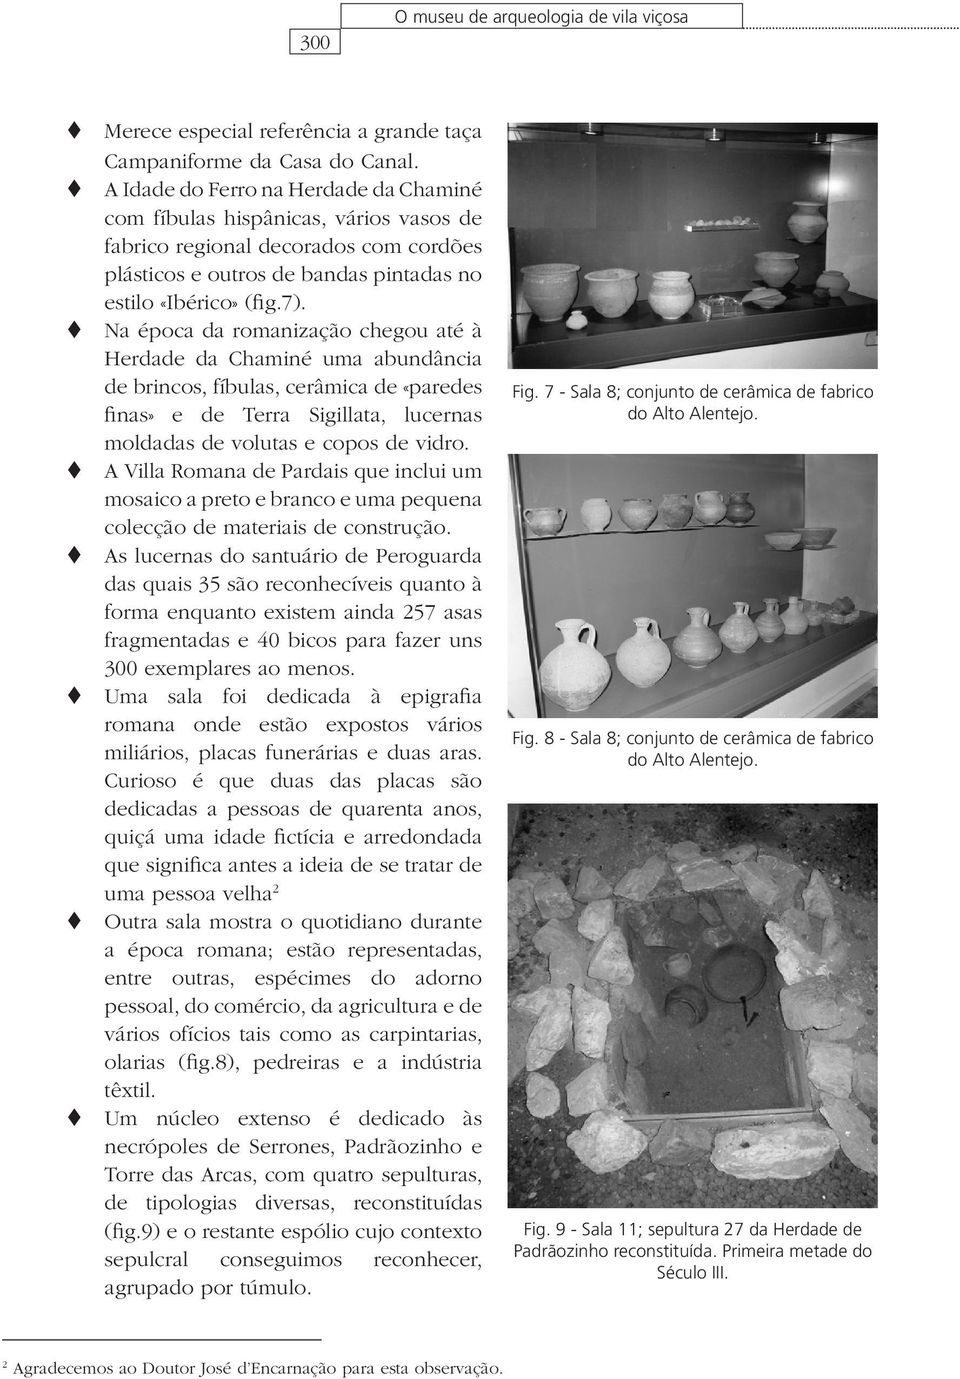 Na época da romanização chegou até à Herdade da Chaminé uma abundância de brincos, fíbulas, cerâmica de «paredes finas» e de Terra Sigillata, lucernas moldadas de volutas e copos de vidro.